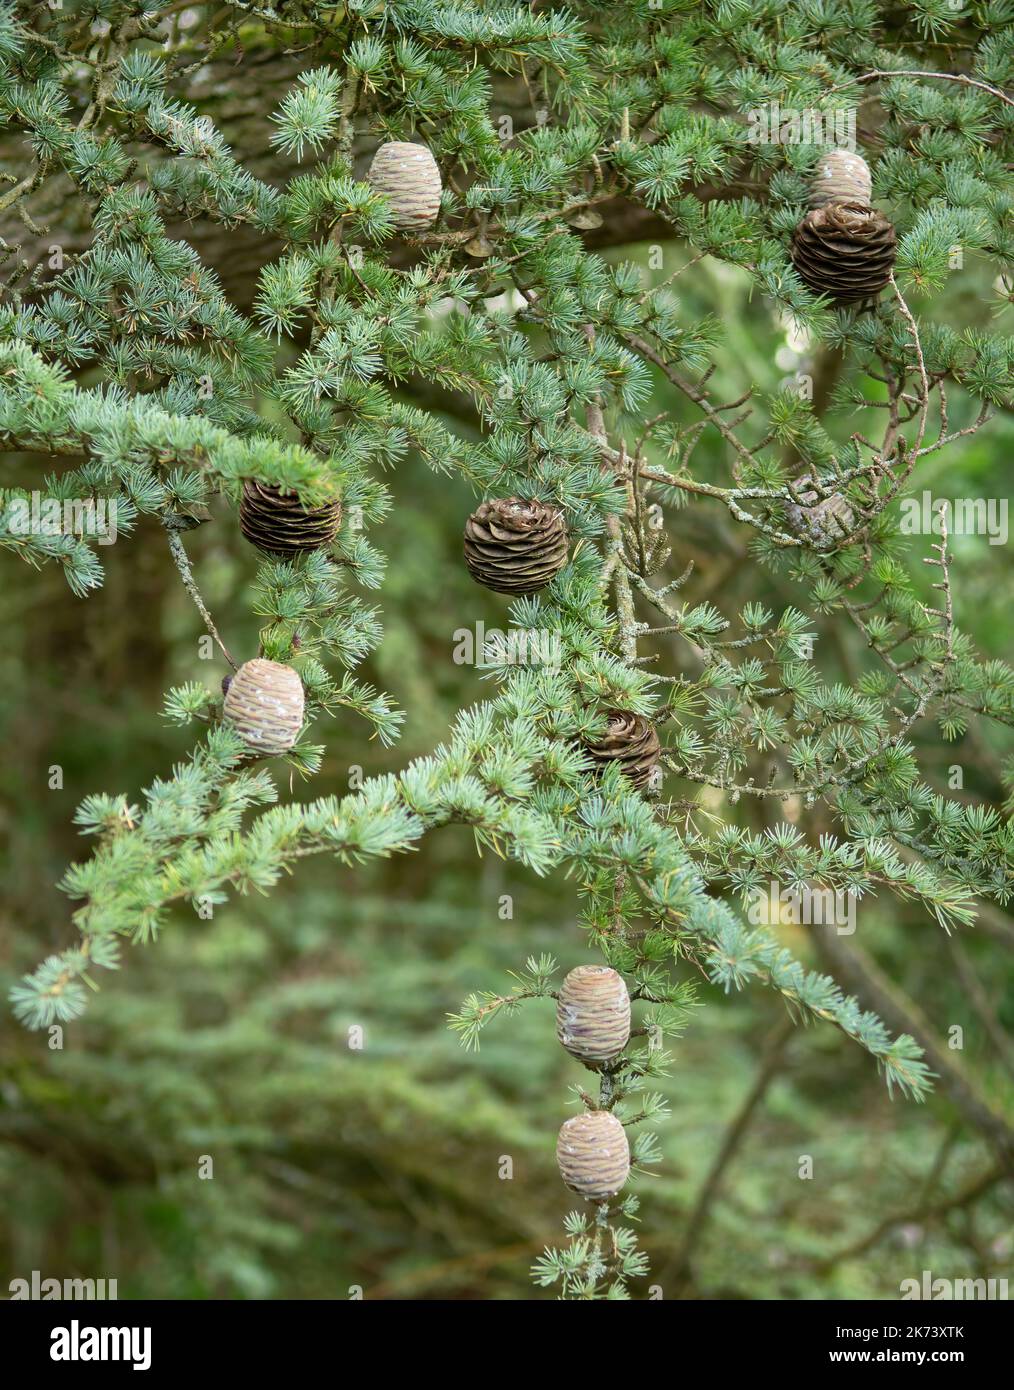 Blue atlas cedar fir tree with fir cones Stock Photo